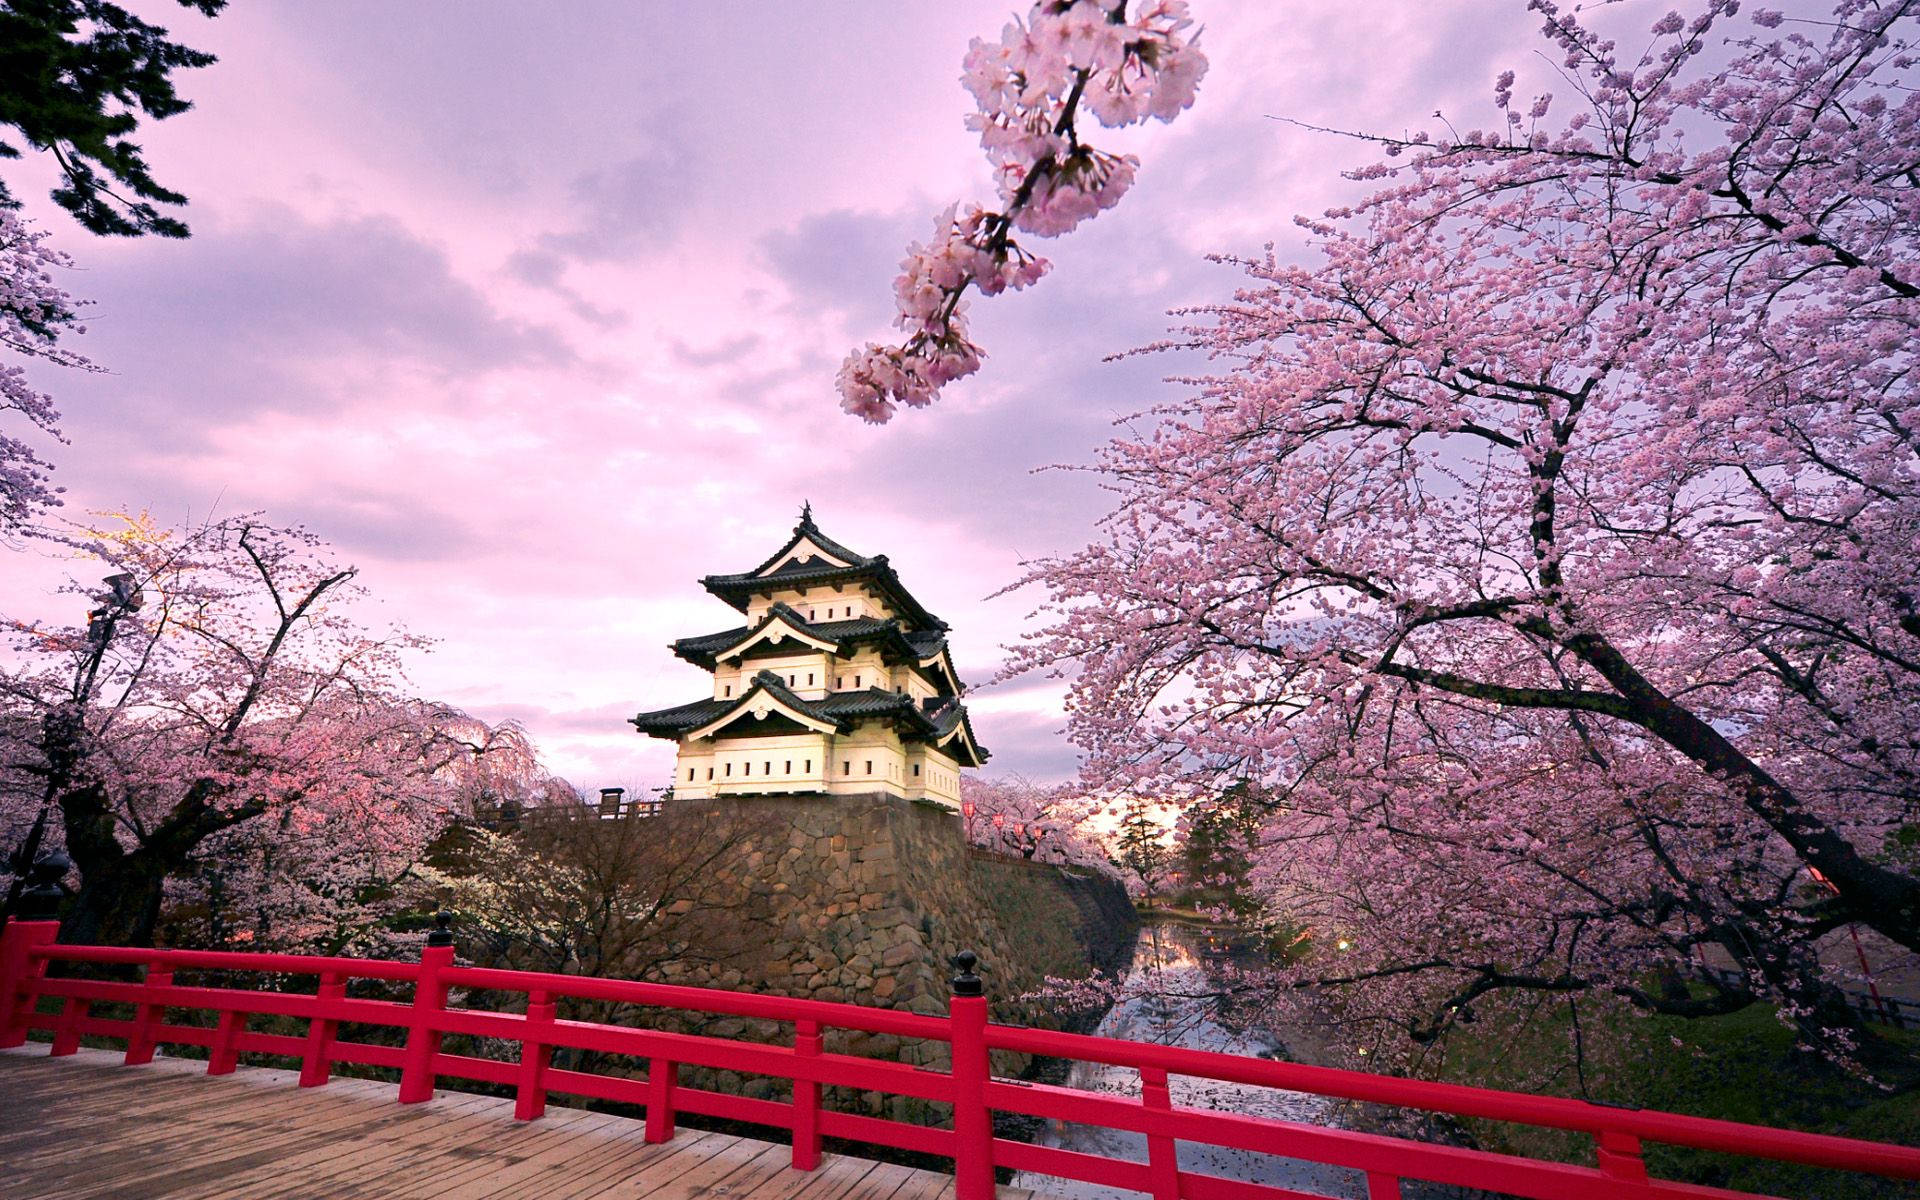 Nhật Bản: Khám phá xứ sở mặt trời mọc - nước Nhật đẹp tuyệt vời đang chờ bạn. Từ các đền thờ lịch sử đến những tòa nhà cao chọc trời hiện đại, Nhật Bản tạo nên một sự đối lập tuyệt đẹp. Một chuyến đi đến đây sẽ đem lại cho bạn những trải nghiệm tuyệt vời.